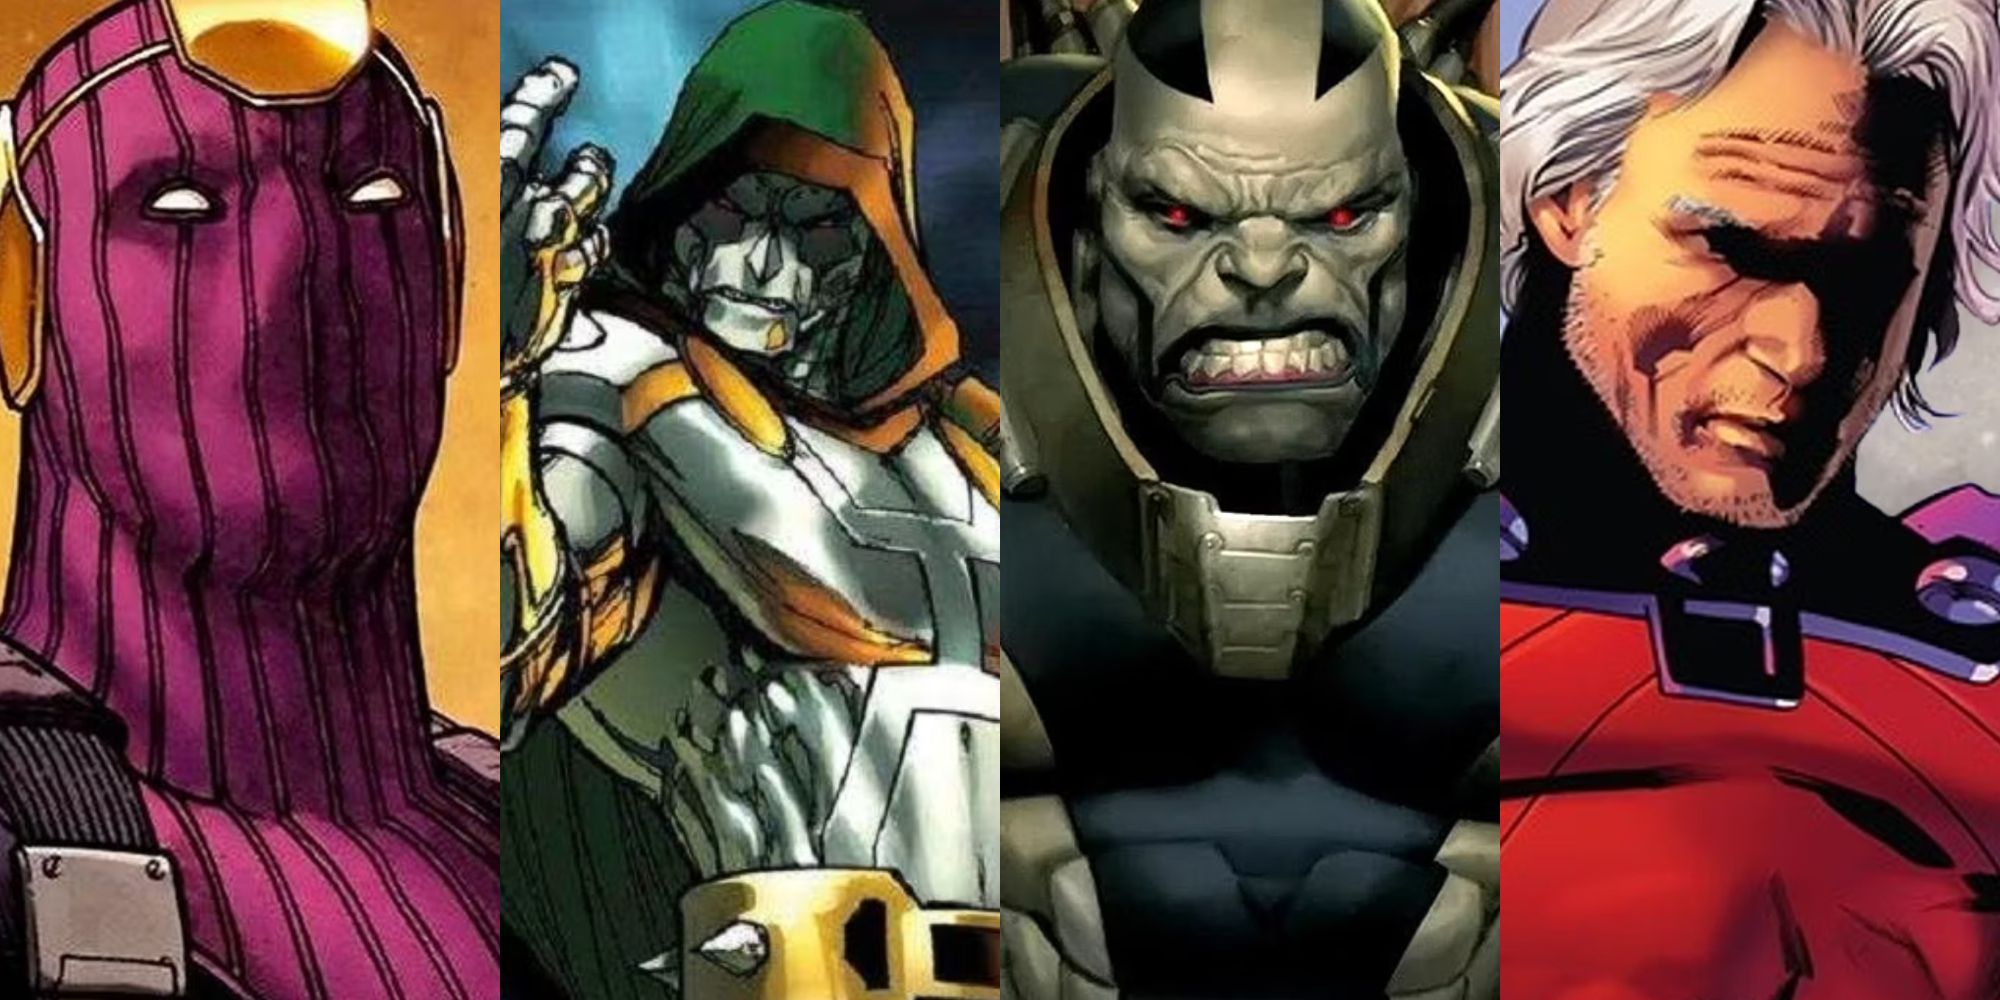 A split image of Marvel villains